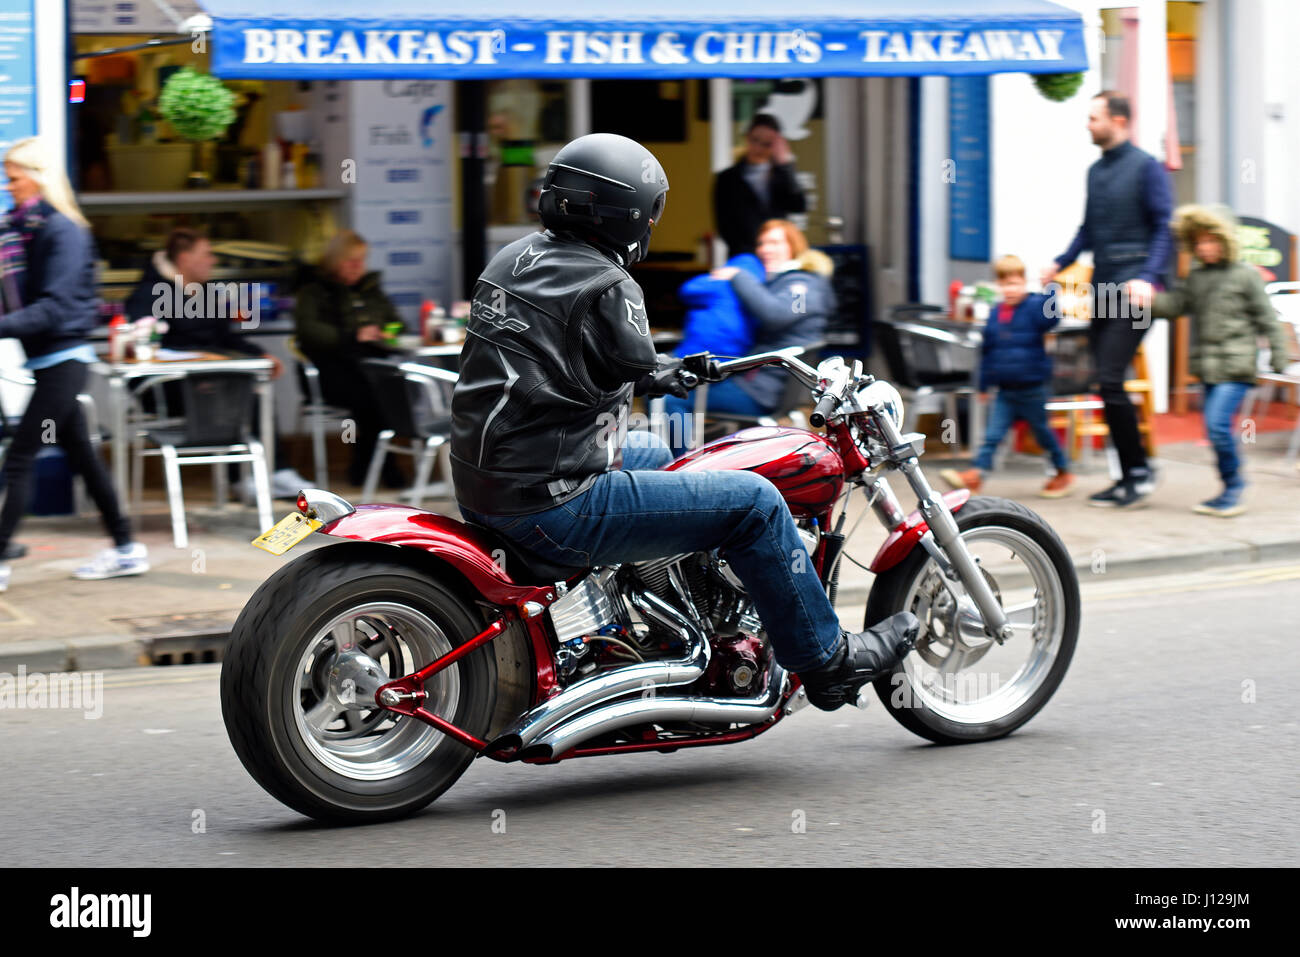 Ein bewaffneter Motorradfahrer, der an der Southend Shakedown Fahrradstrecke teilnimmt, vorbei an den Arches Cafés. Deaktiviert. Behinderung Stockfoto